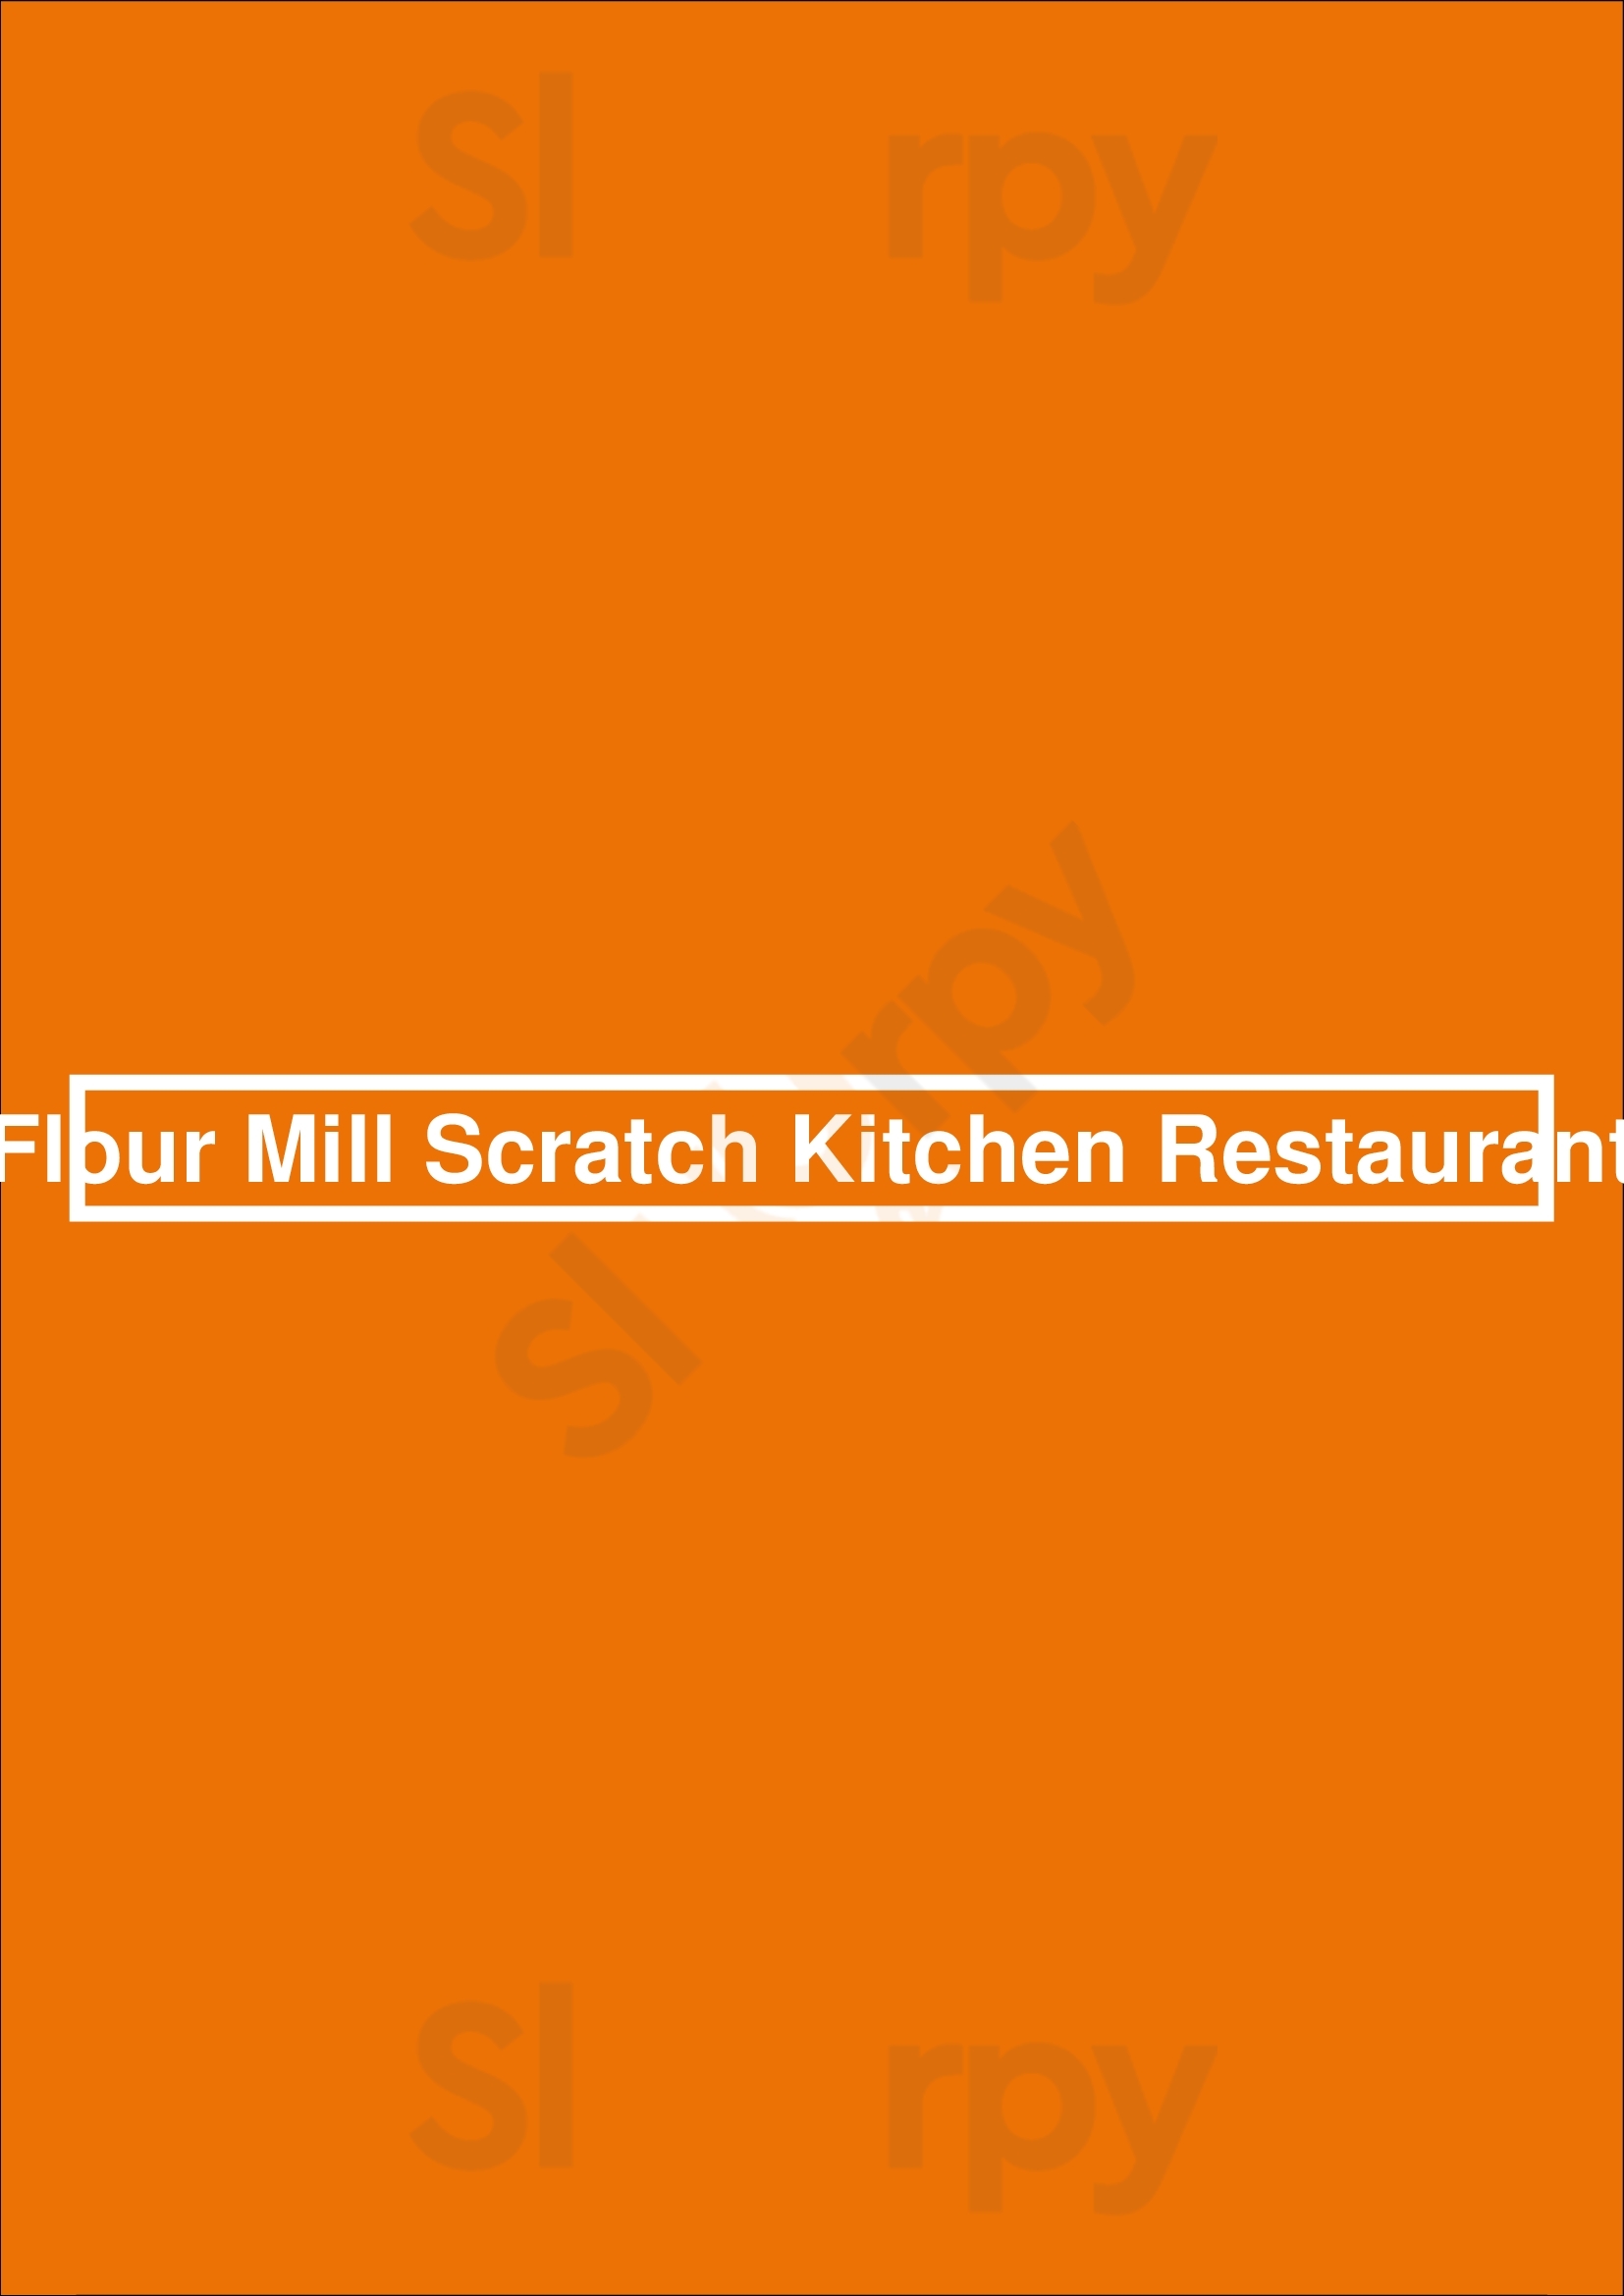 Flour Mill Scratch Kitchen Restaurant Niagara Falls Menu - 1